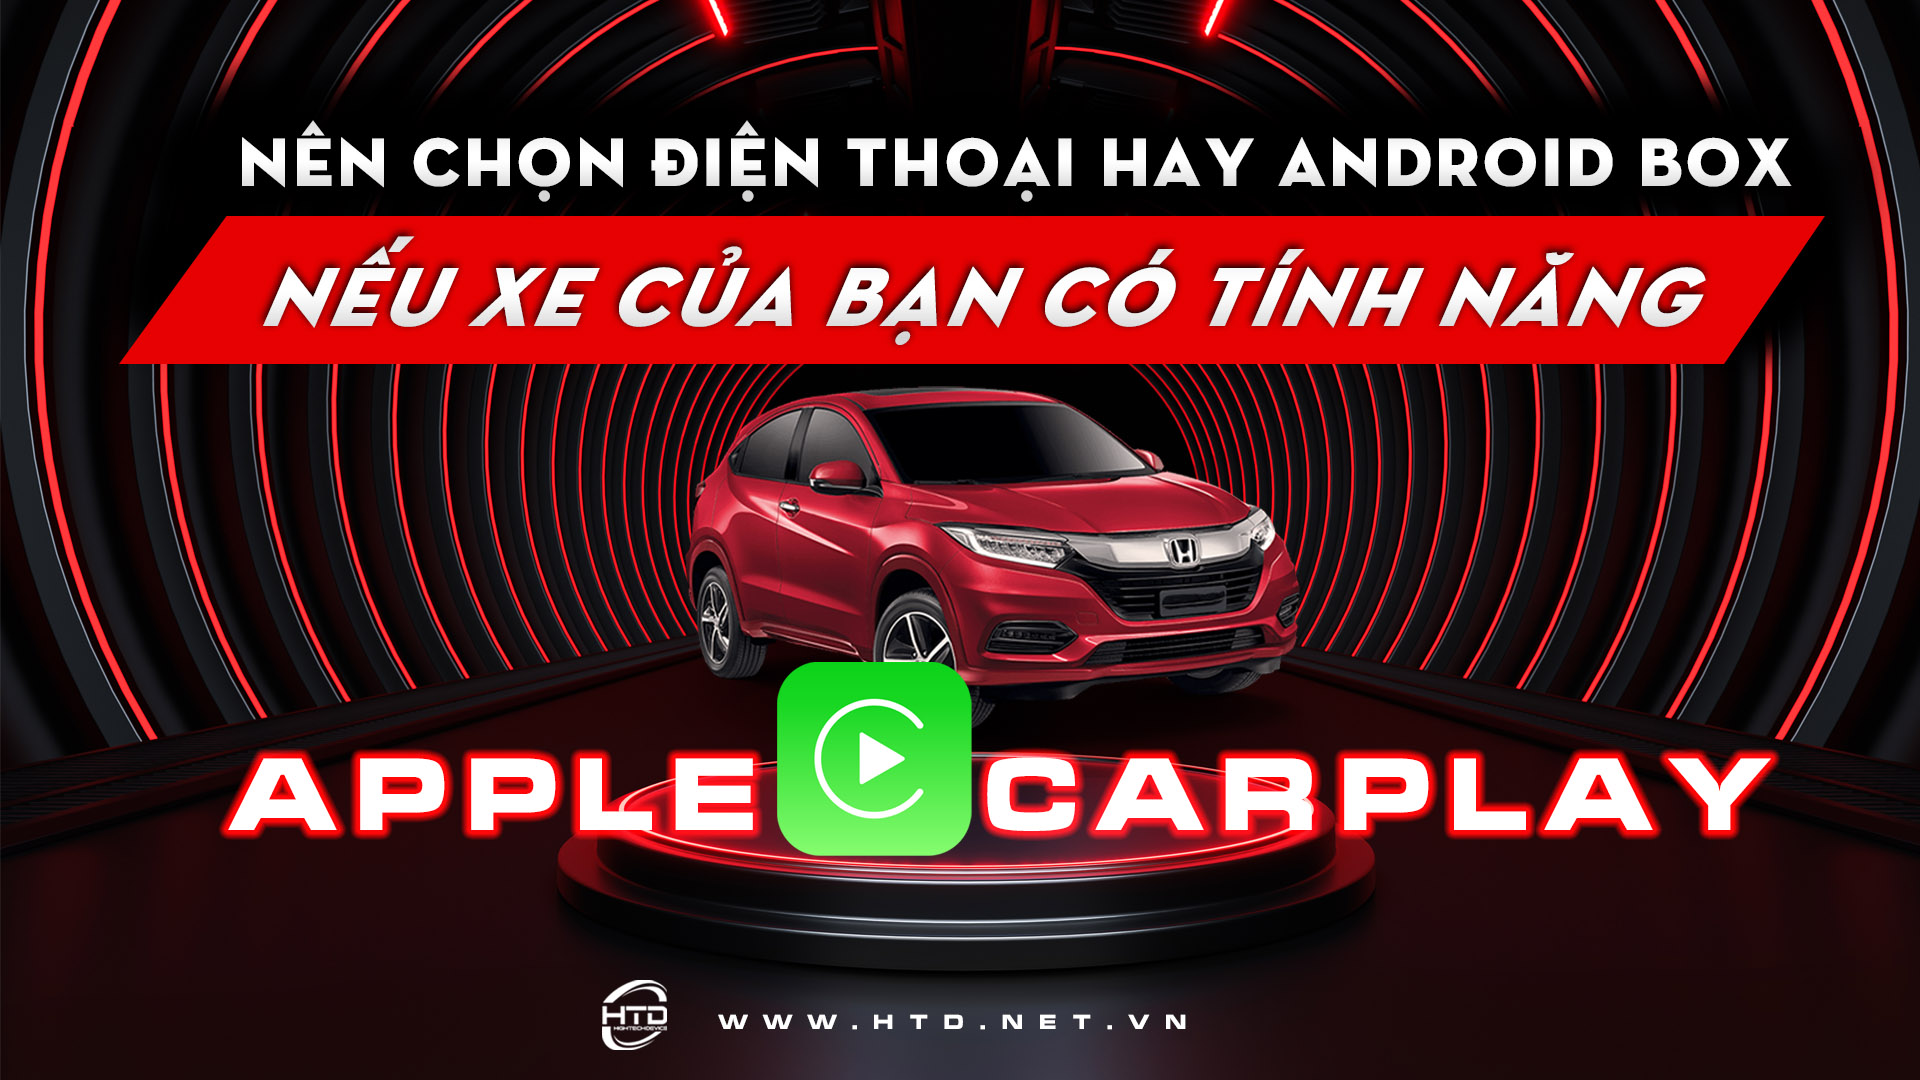 Có sẵn Apple Carplay trên ô tô, nên sử dụng Android Box hay điện thoại